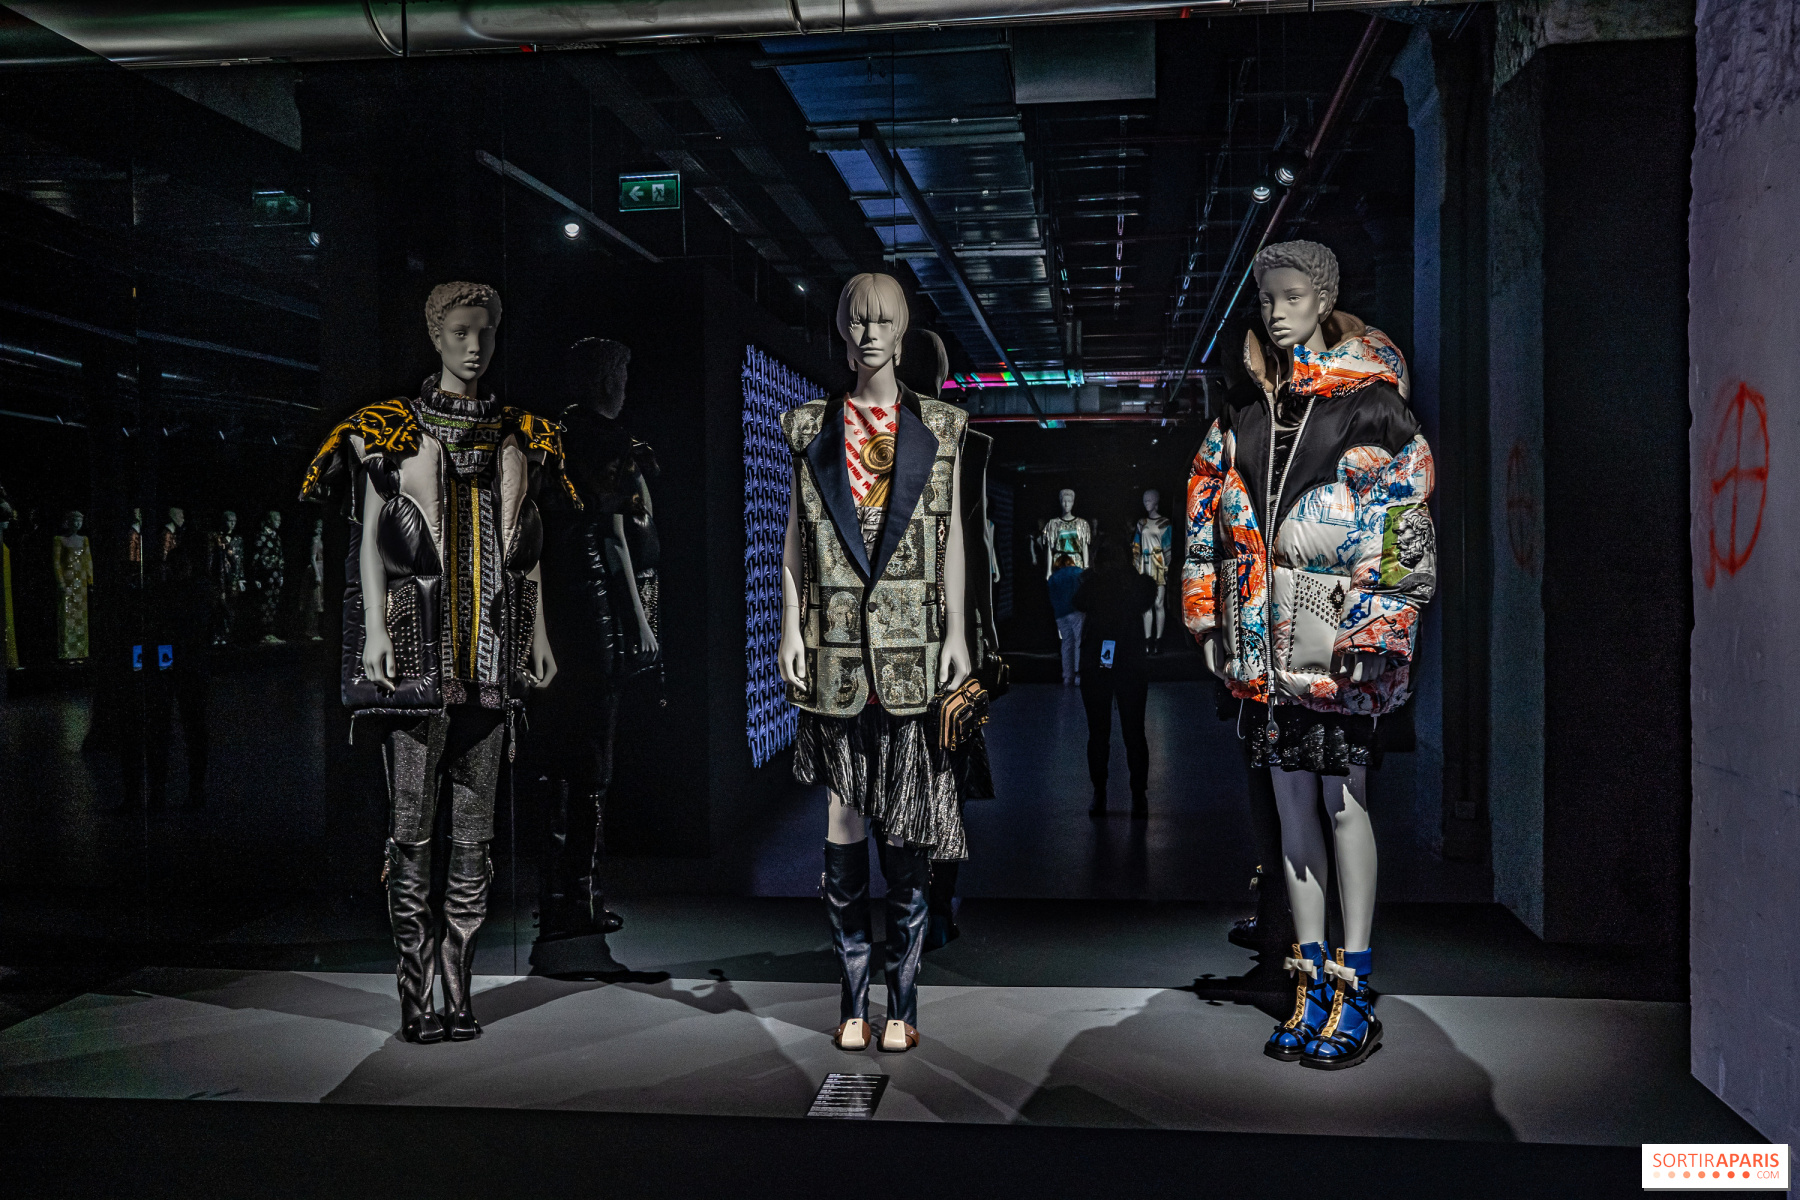 Aniversario: Louis Vuitton, el arte de vivir o vivir con arte